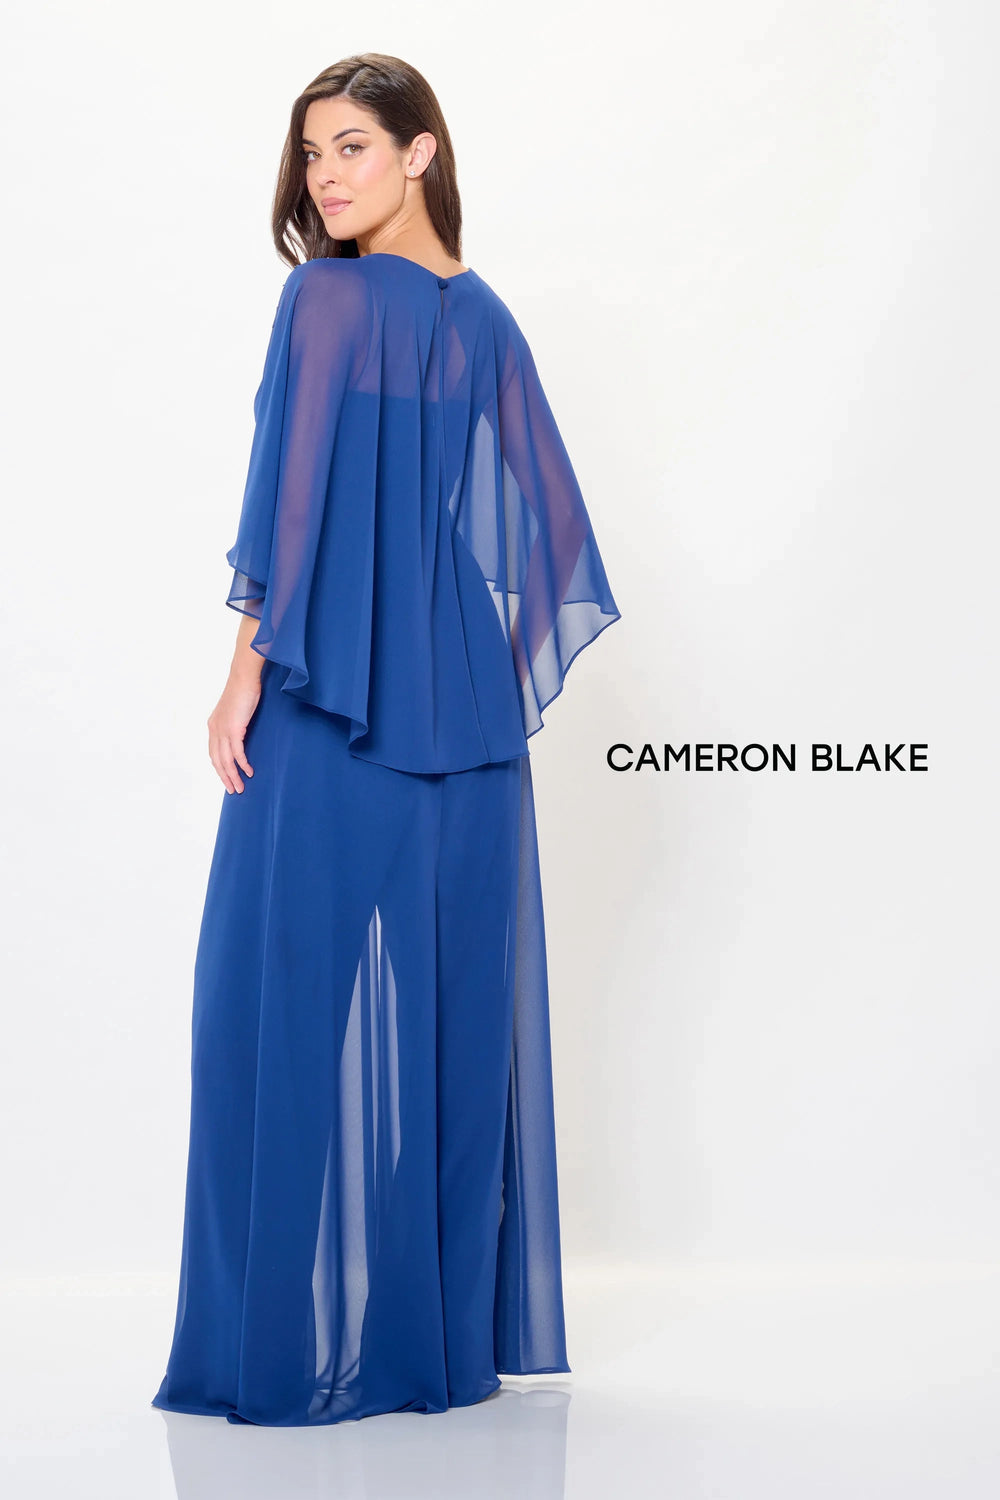 Mon Cheri Cameron Blake Dress Mon Cheri Cameron Blake CB3242 Dress